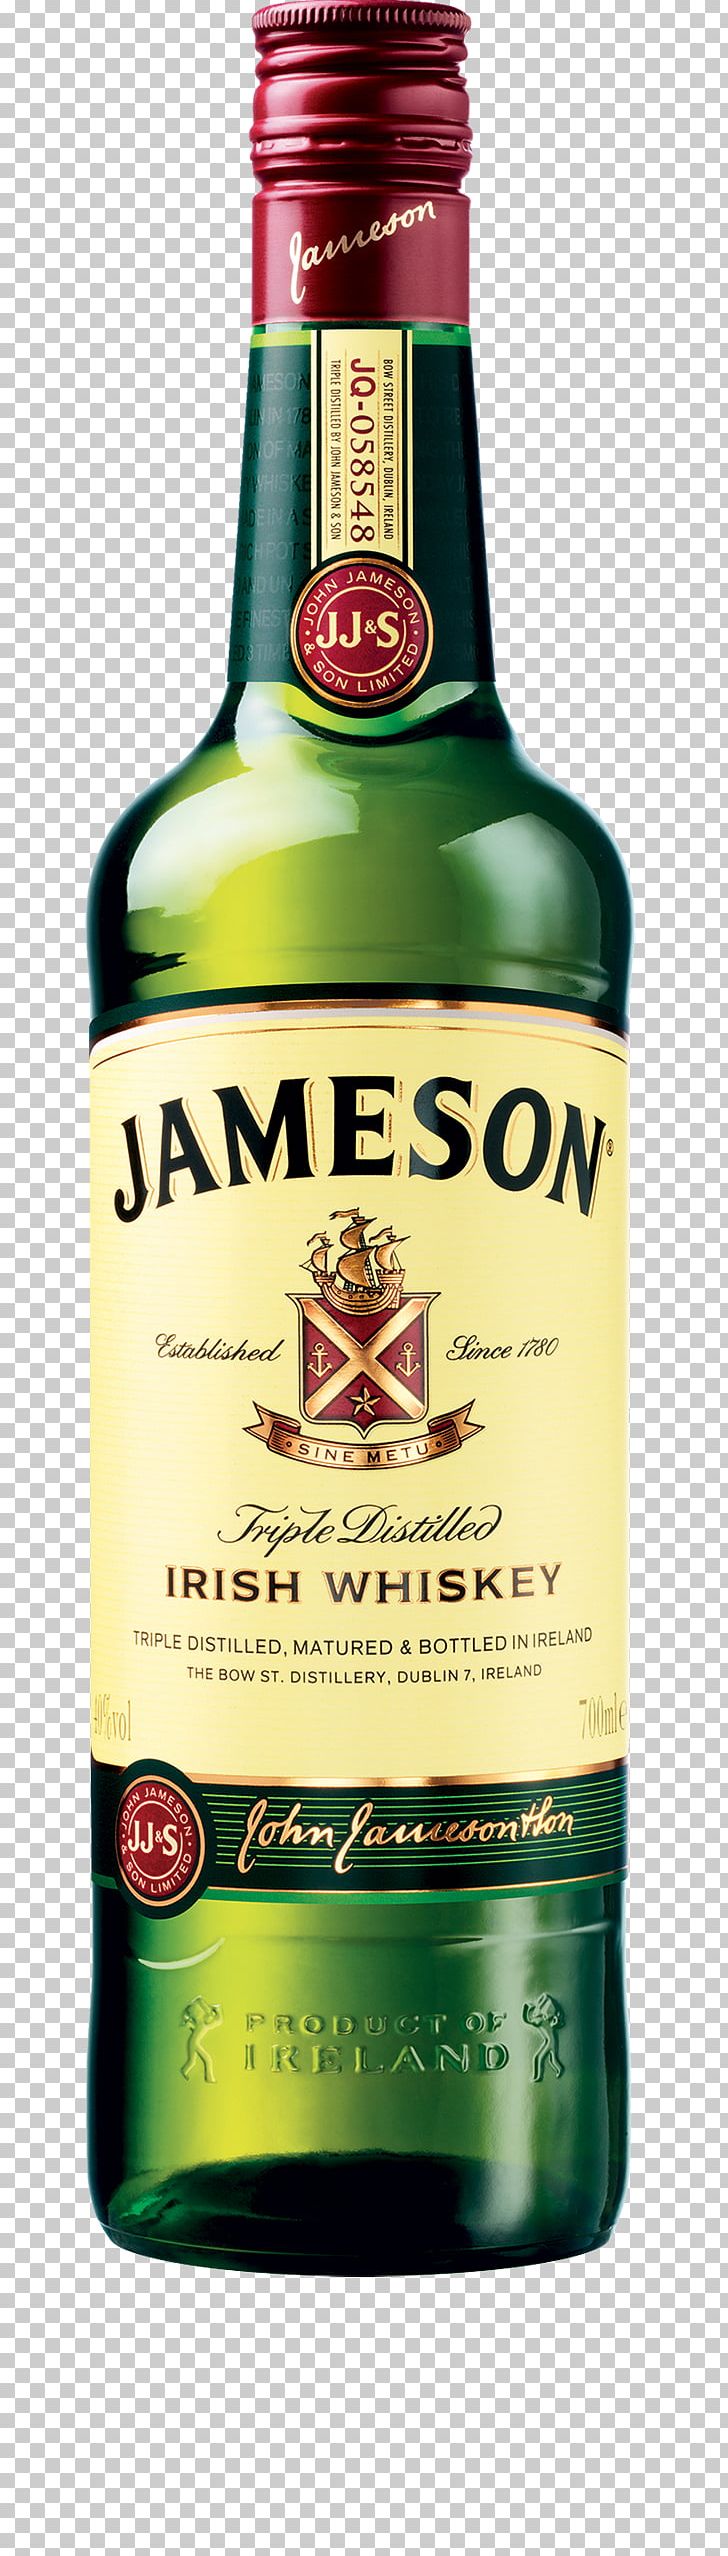 Jameson Irish Whiskey Distilled Beverage New Midleton Distillery PNG, Clipart, Alcoholic Beverage, Barrel, Blended Whiskey, Bottle, Distillation Free PNG Download